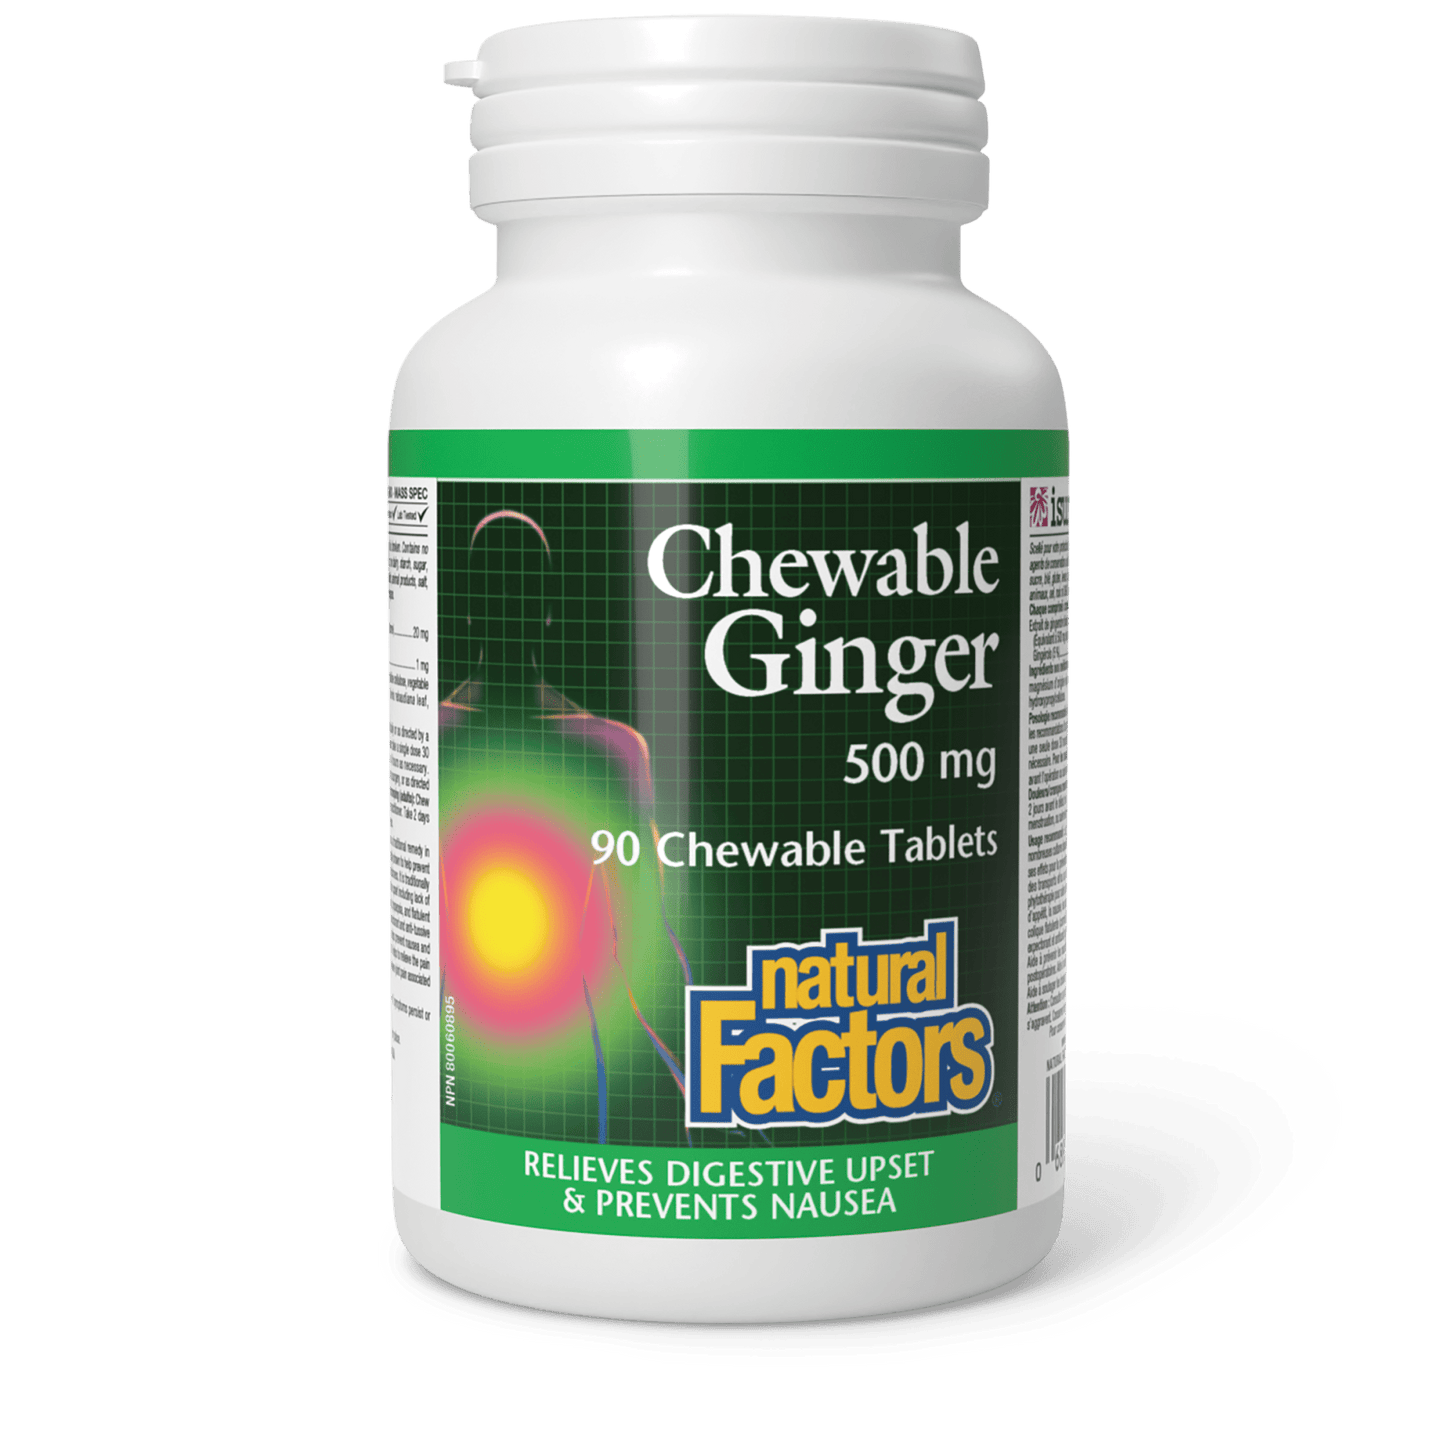 Chewable Ginger 500 mg, Natural Factors|v|image|4506